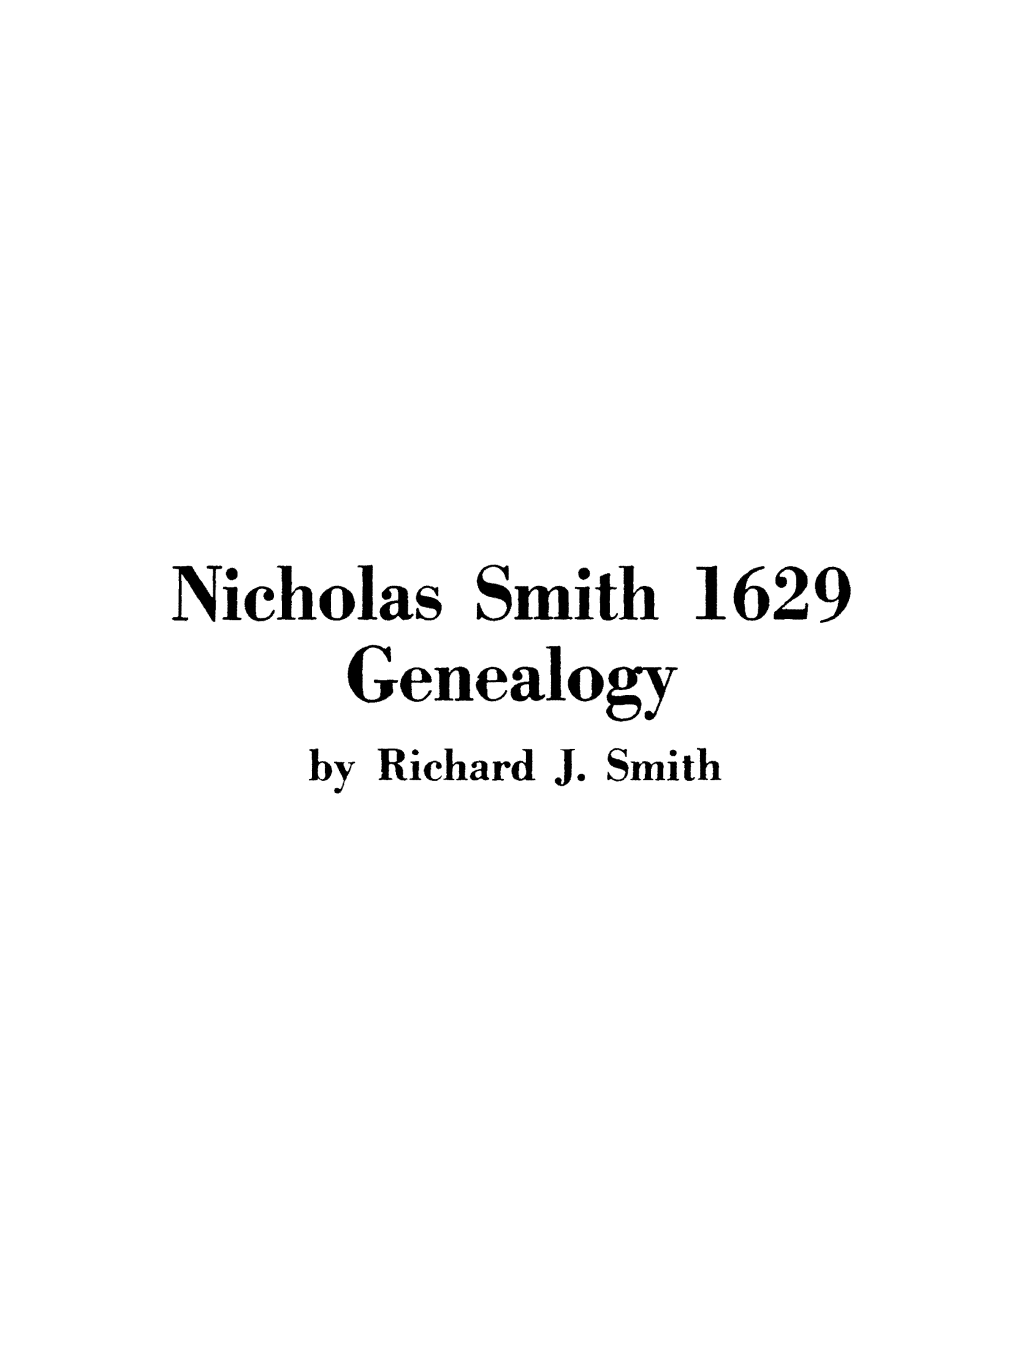 Nicholas Smith 1629 Genealogy by Richard J